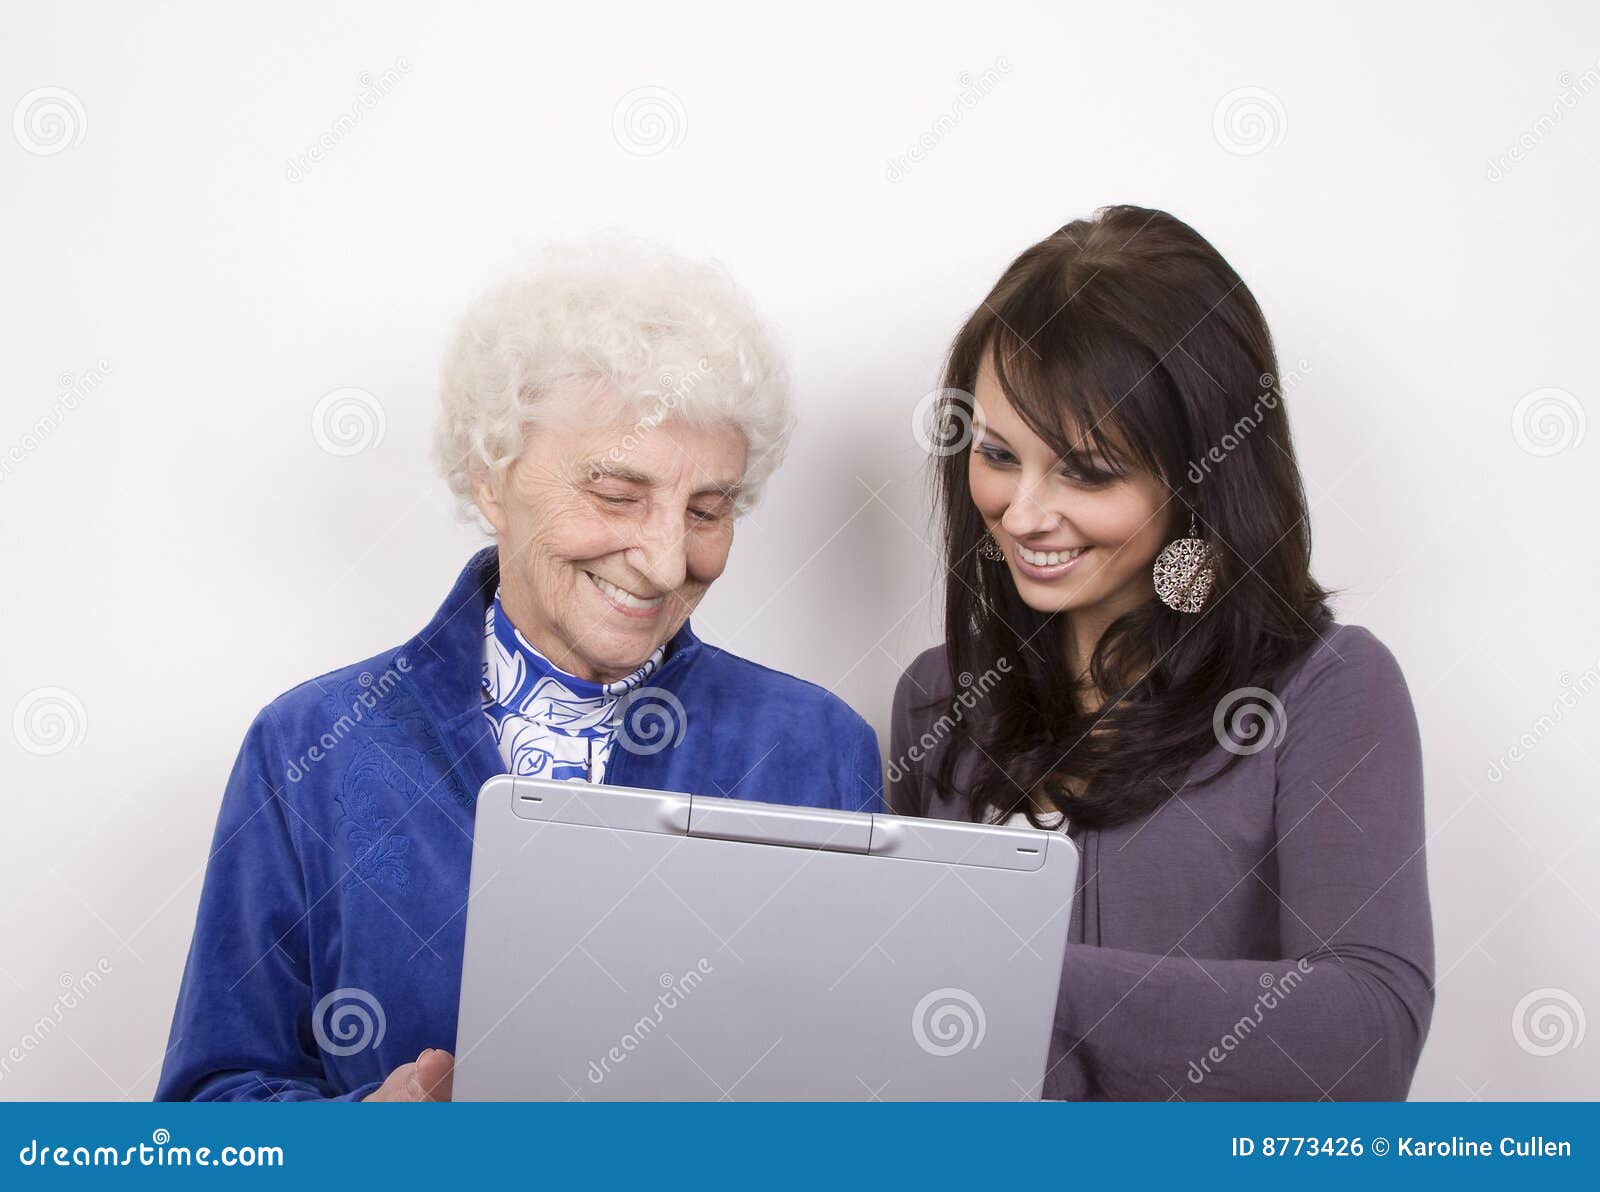 Lächeln am Computer. Eine weiße behaarte Dame und ein Lächeln der recht jungen Frau an, was auf einem Laptop ist.